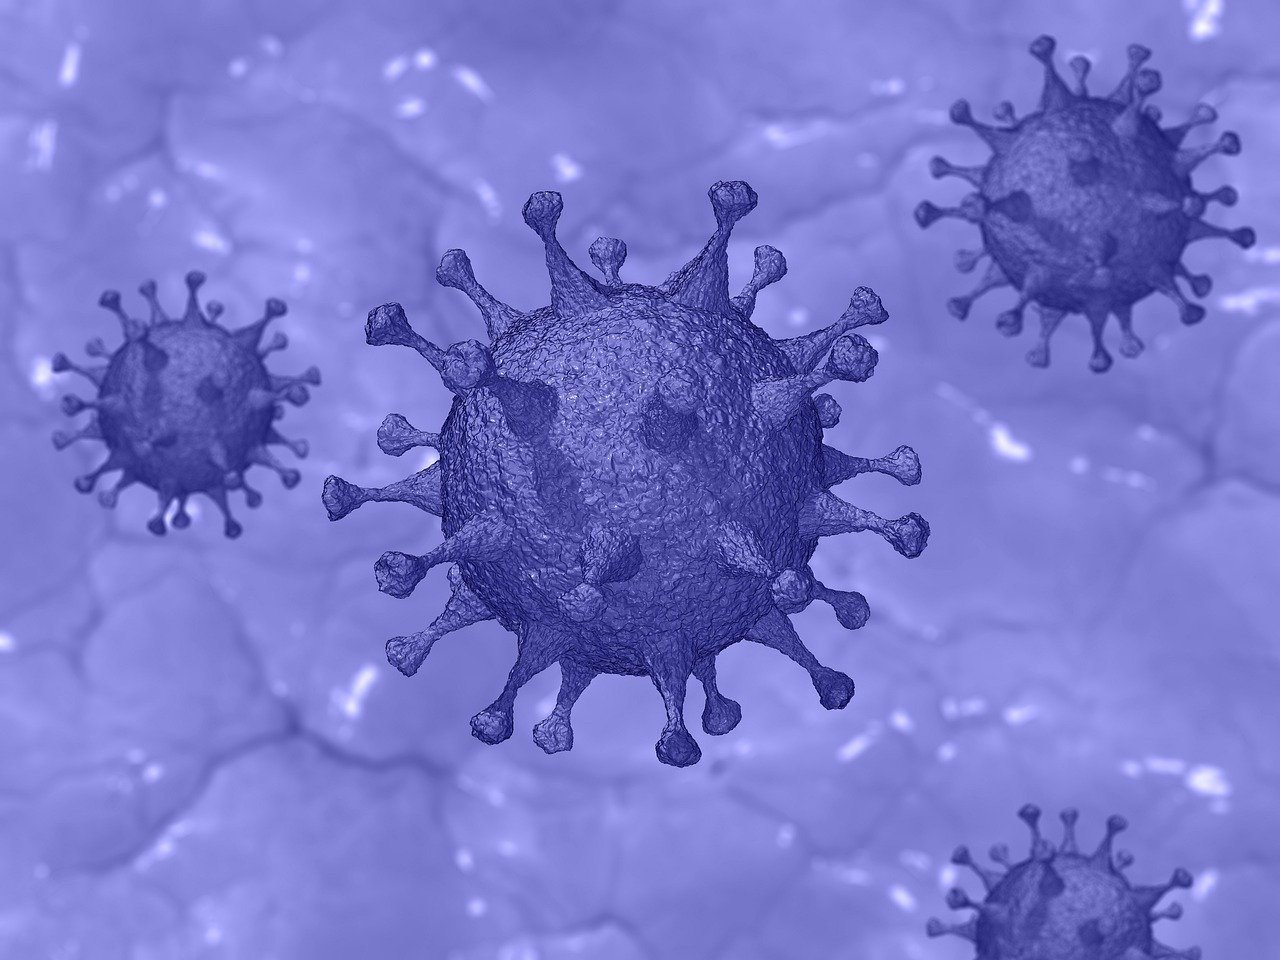 Сколько человек на сегодня, 27 марта, заболевших коронавирусом в России?